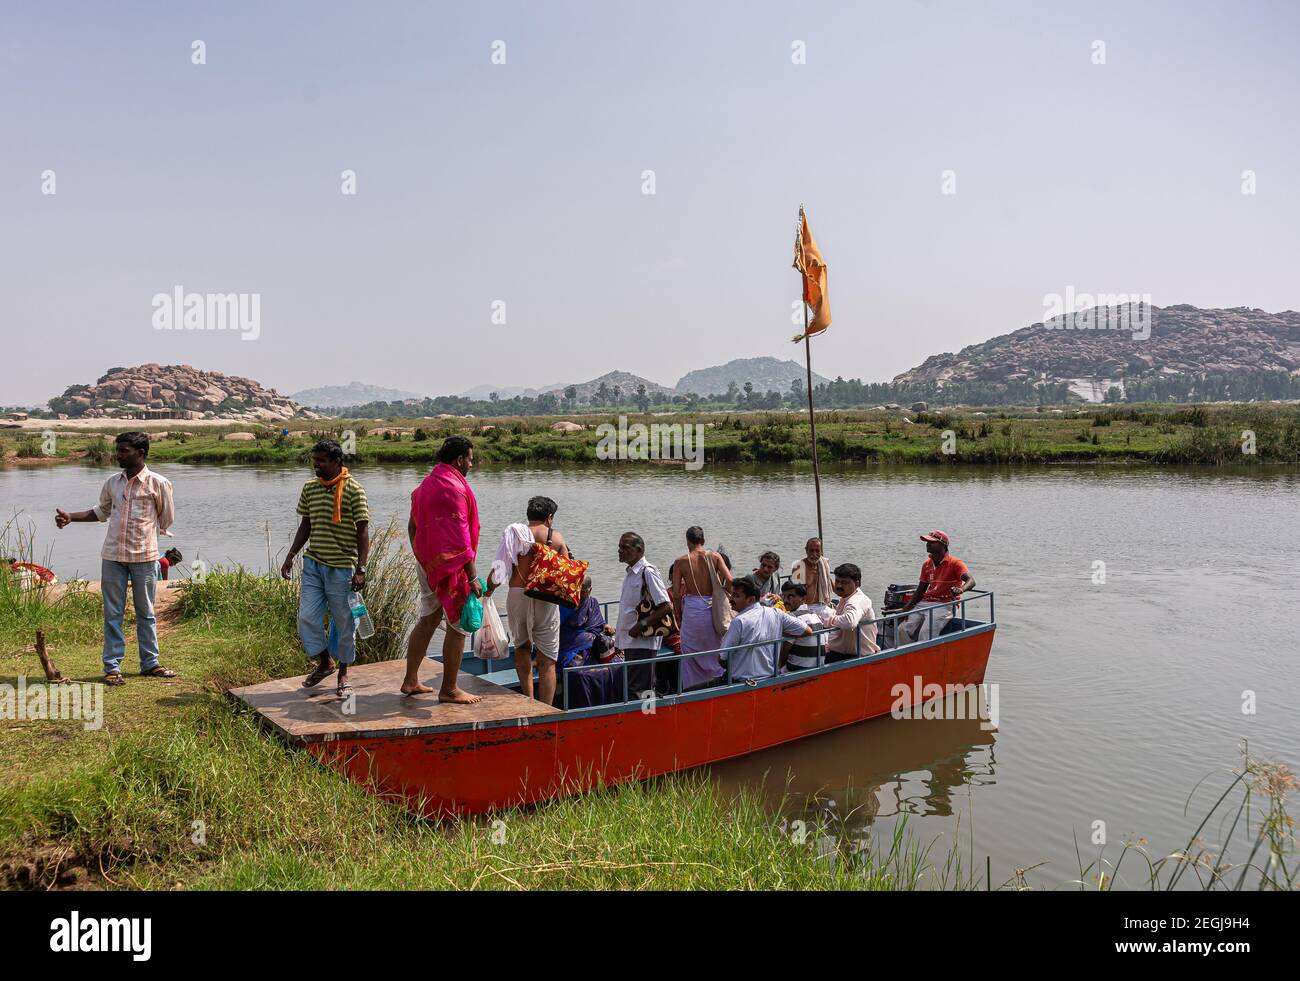 Anegundi, Karnataka, Inde - 9 novembre 2013 : petit traversier rouge sur la rivière Tungabhadra entre les îles du temple et la terre principale pleine de personnes prêtes Banque D'Images